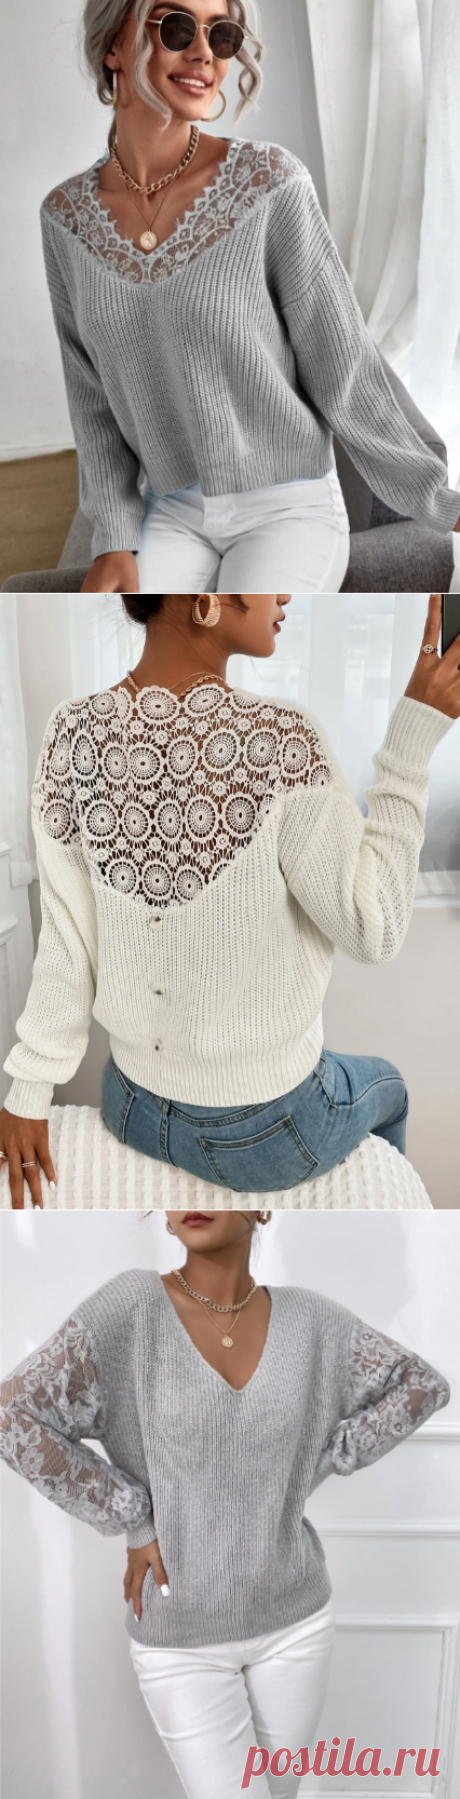 Пуловеры с кружевными вставками — выглядят шикарно и вяжутся быстро | Тепло о вязании | Яндекс Дзен